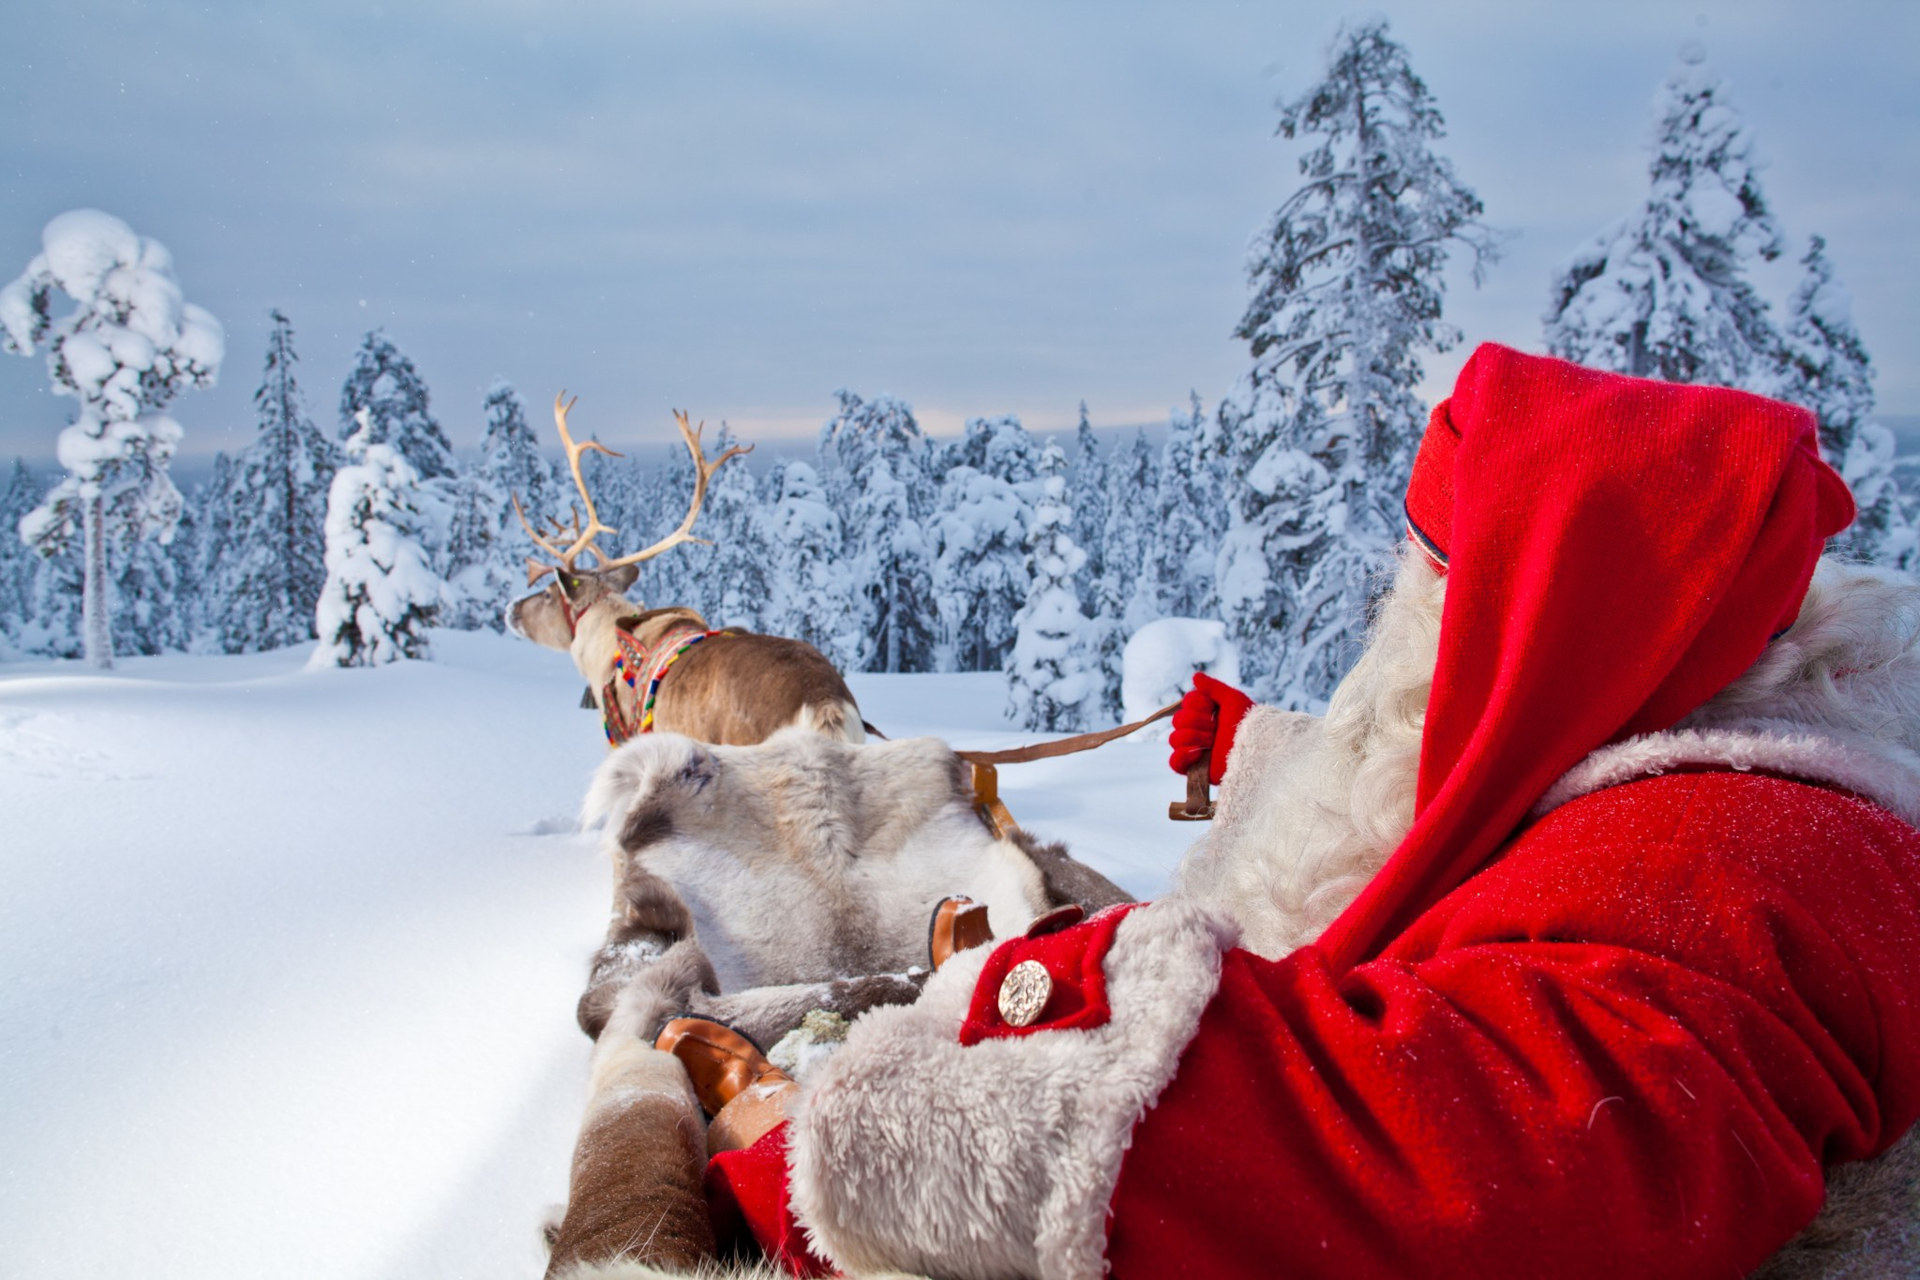 santa-claus-reindeer-games-sleigh-rides-visit-finnish-lapland